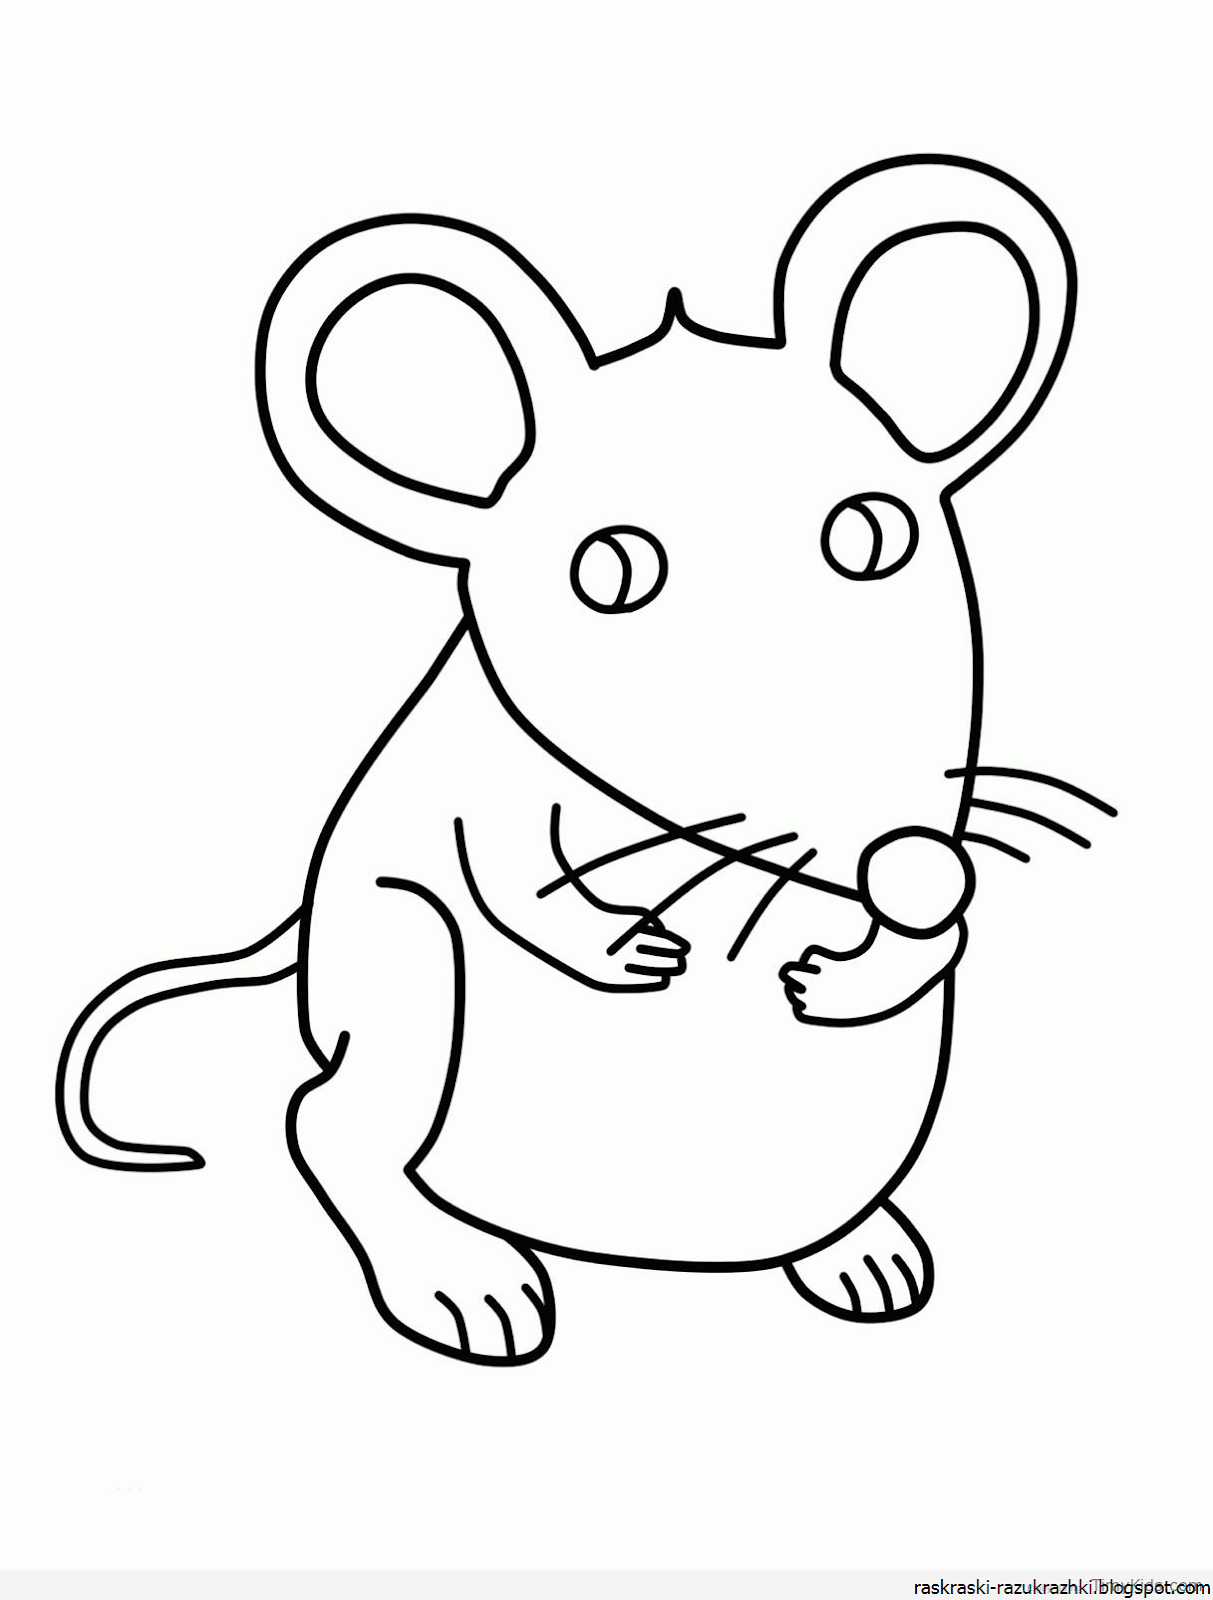 Картинки раскраски мышат. Раскраска мышка. Мышка рисунок. Раскраска пышка. Мышь раскраска для детей.